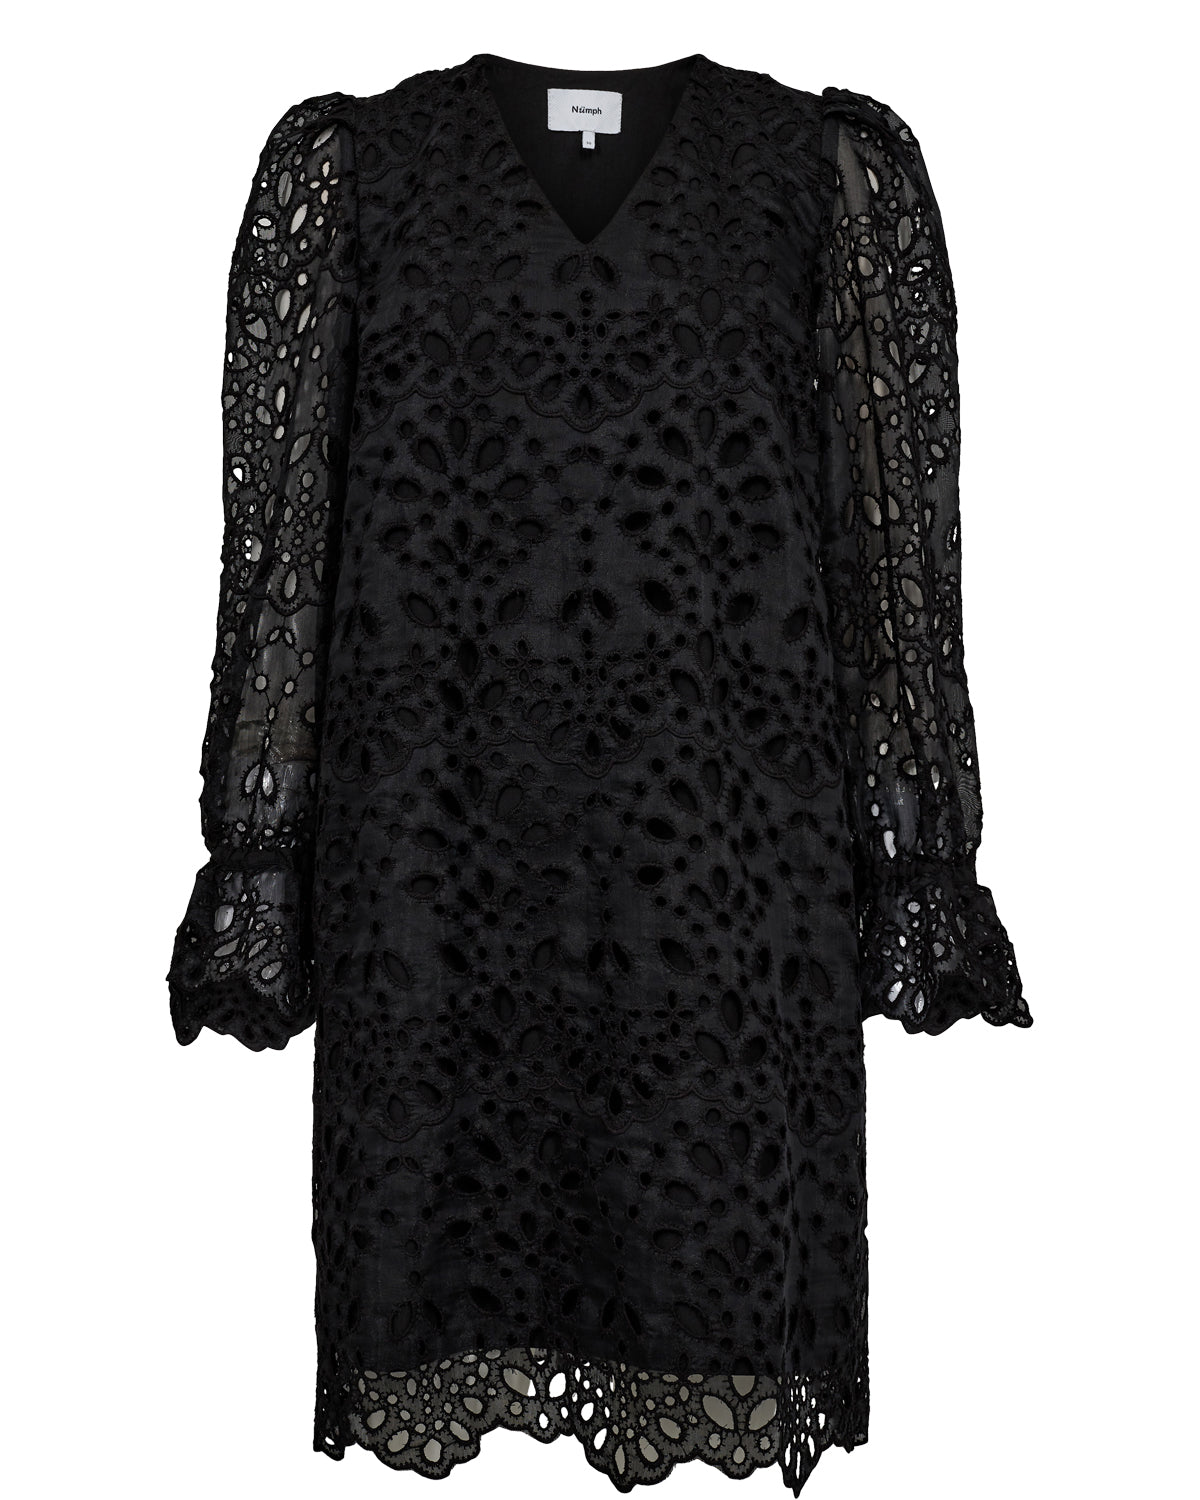 Nümph Nueliza Dress in Caviar Black